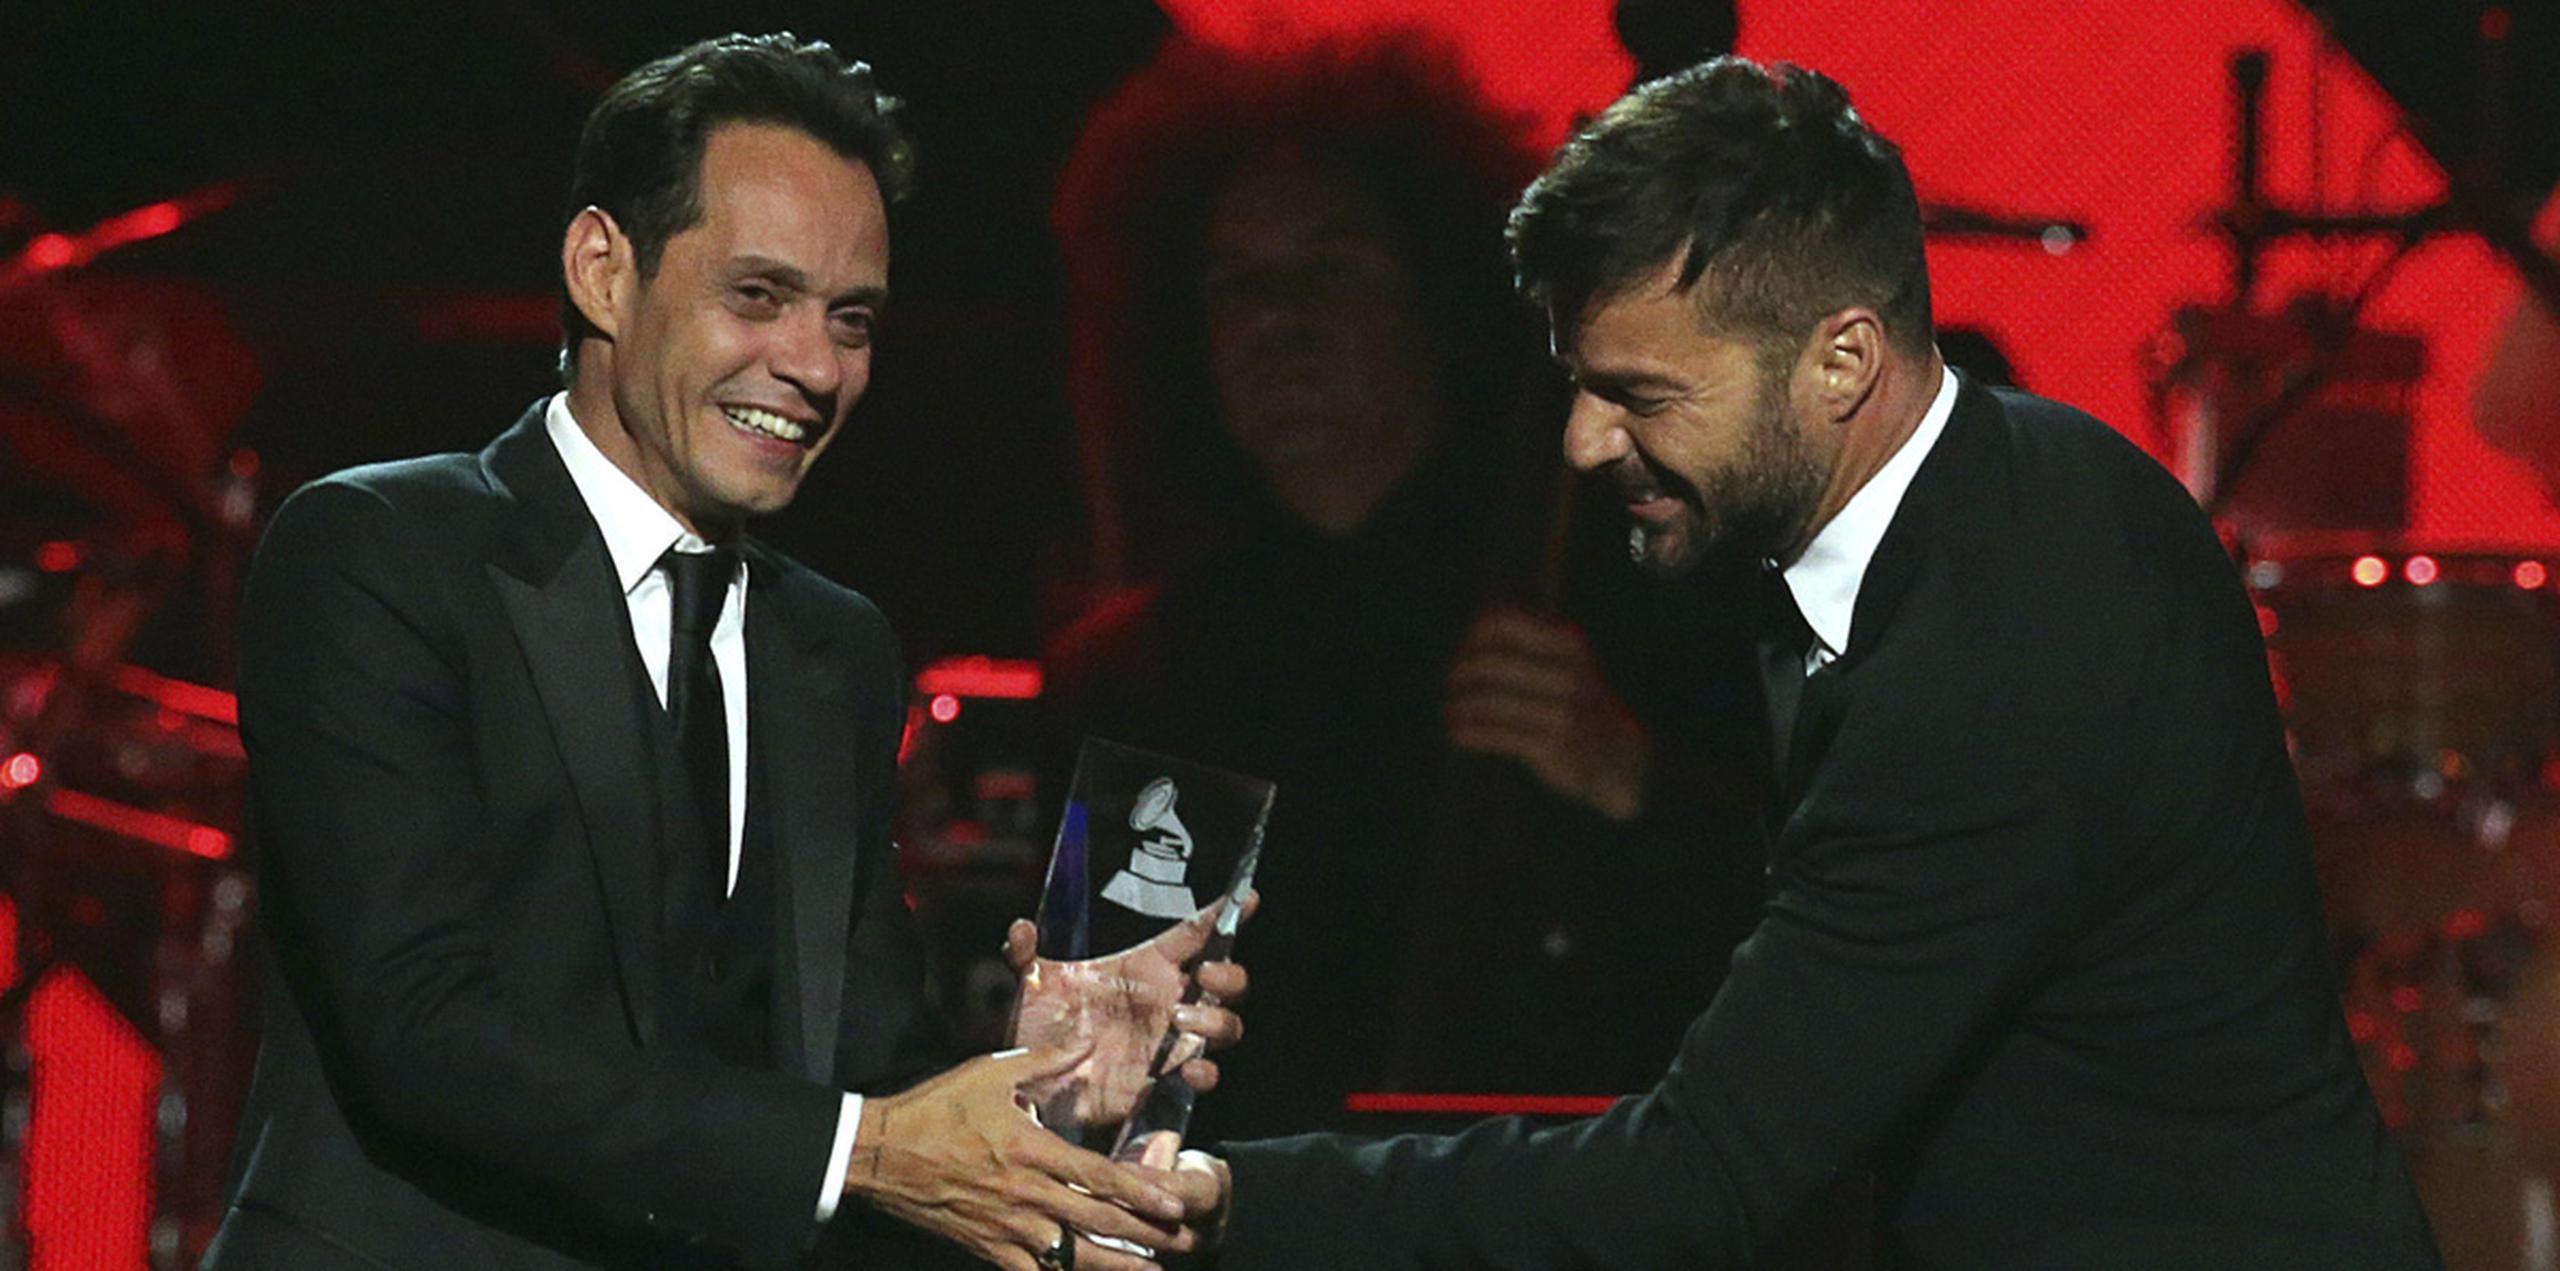 Ricky Martin, quien no figuraba en el programa, lo sorprendió entregándole el premio. (EFE)